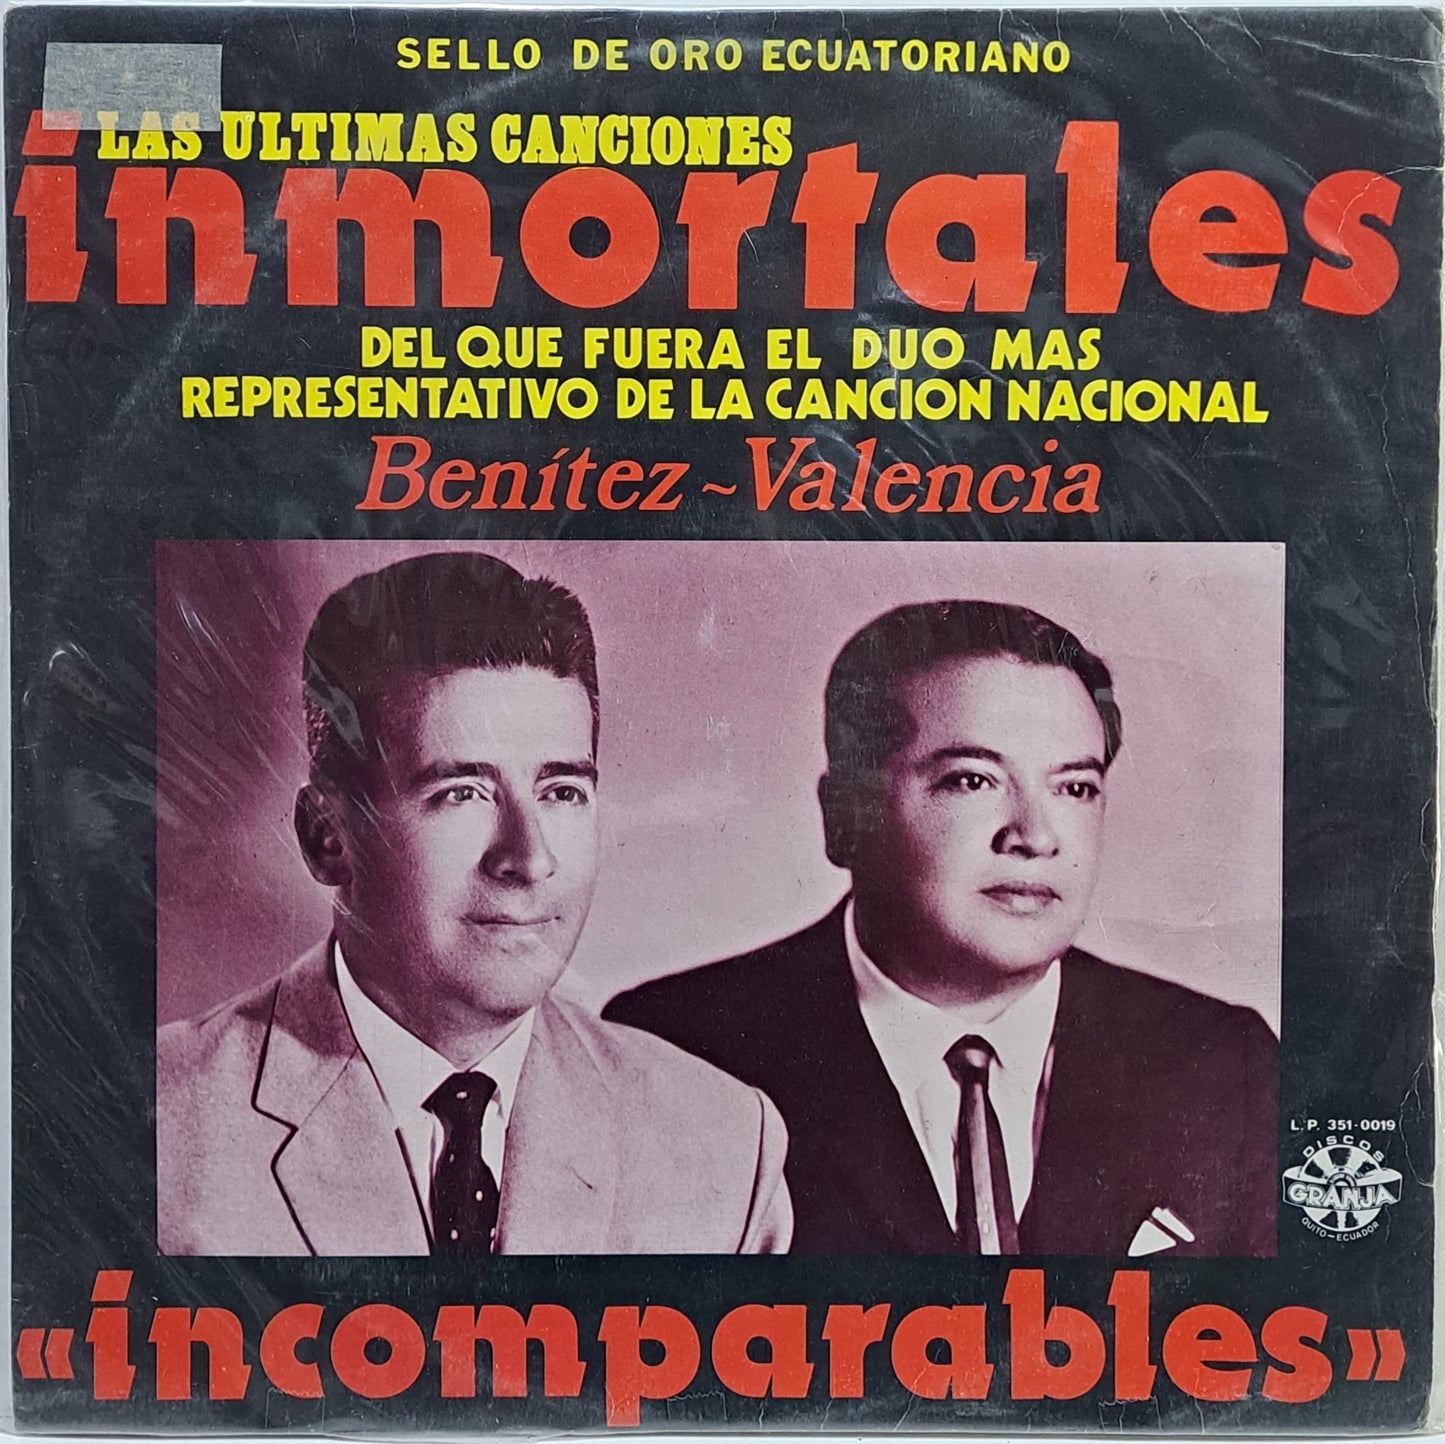 BENITEZ - VALENCIA - LAS ULTIMAS CANCIONES INMORTALES  LP